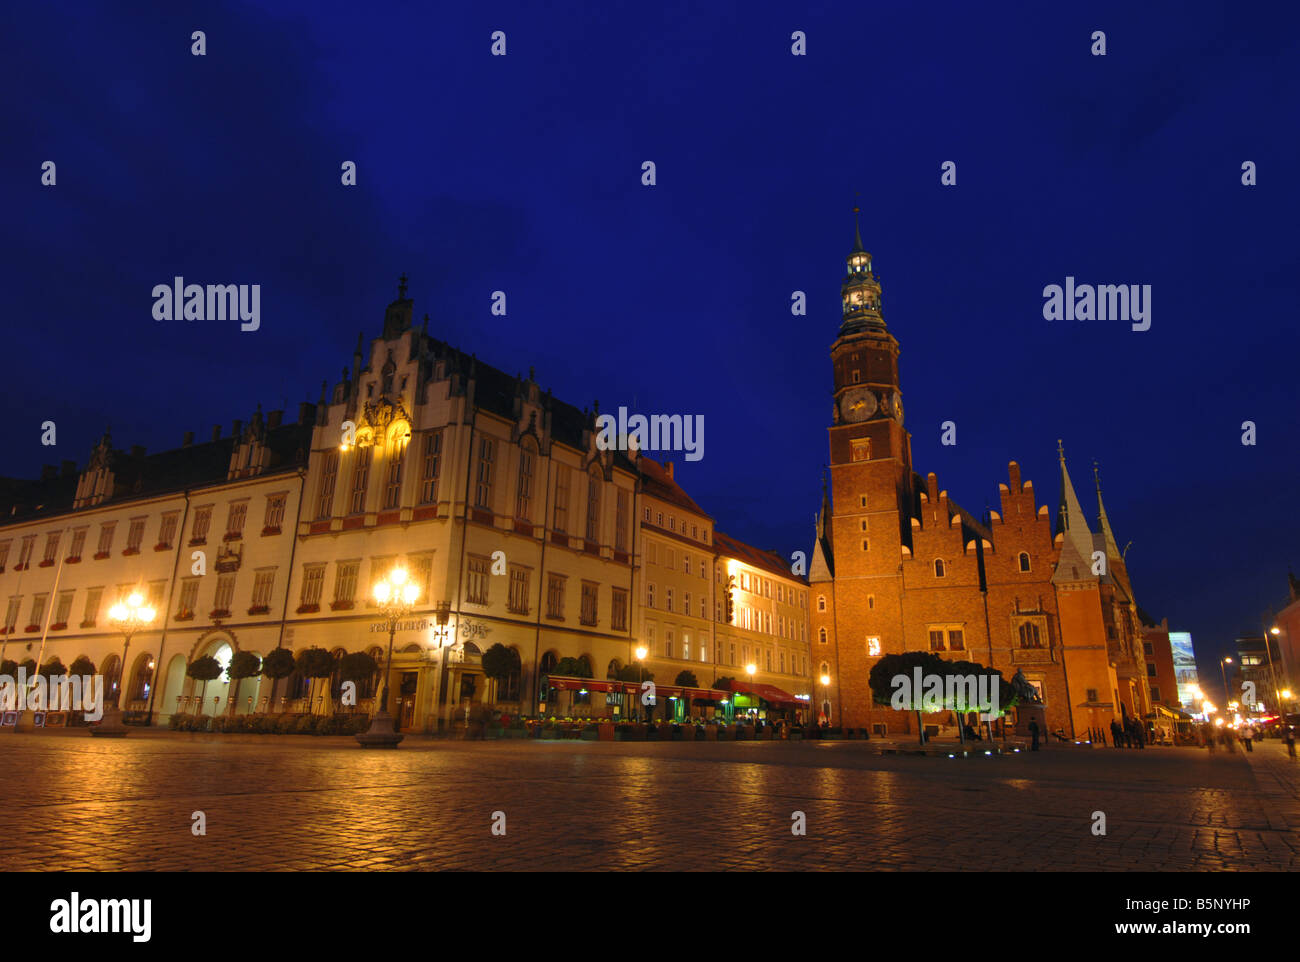 Rynek Square, Wroclaw, Poland Stock Photo